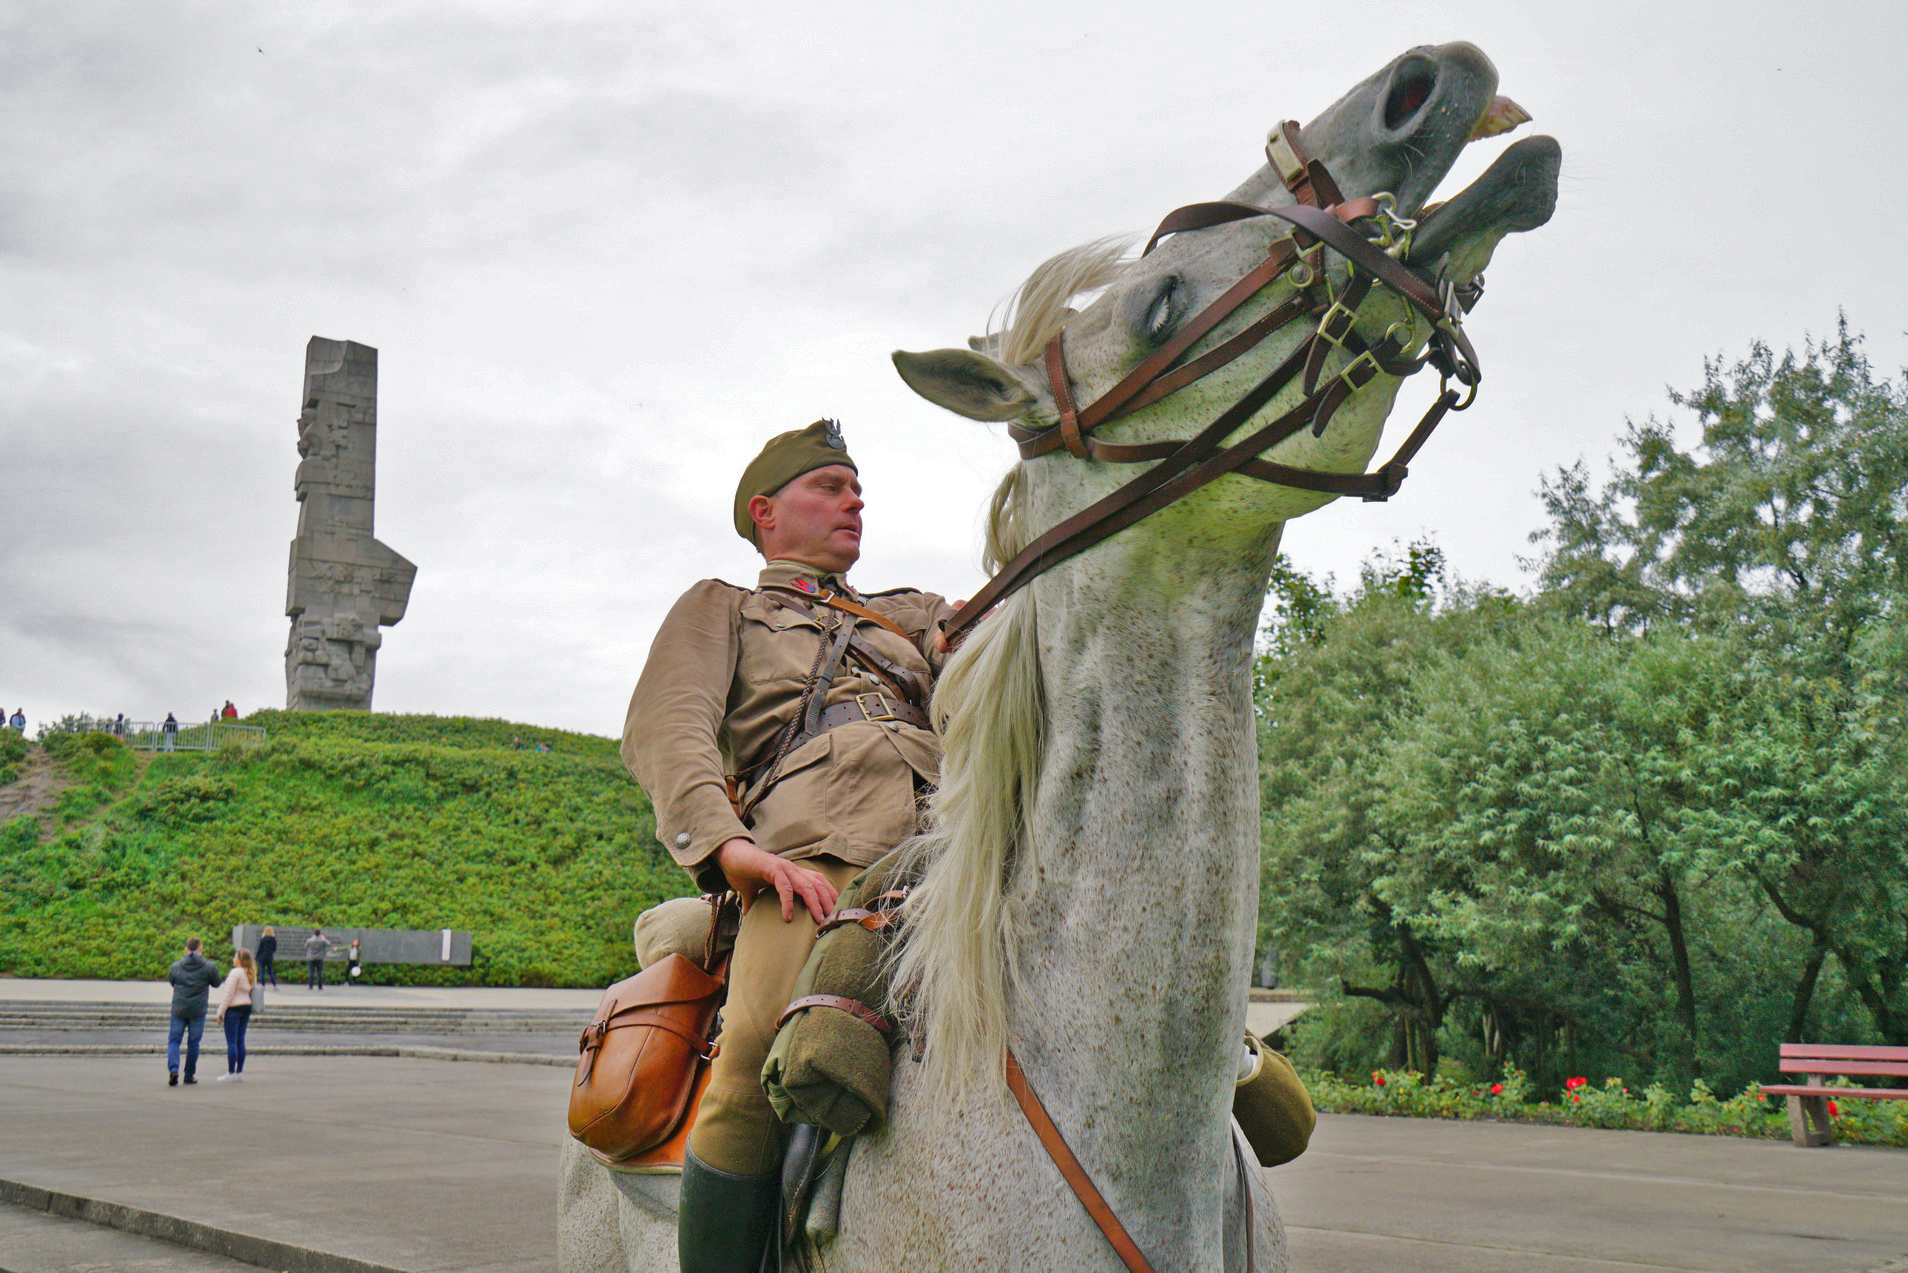 Jeździec na koniu w mundurze generała wojska polskiego z II Wojny Światowej. W oddali widać Pomnik Obrońców Wybrzeża.